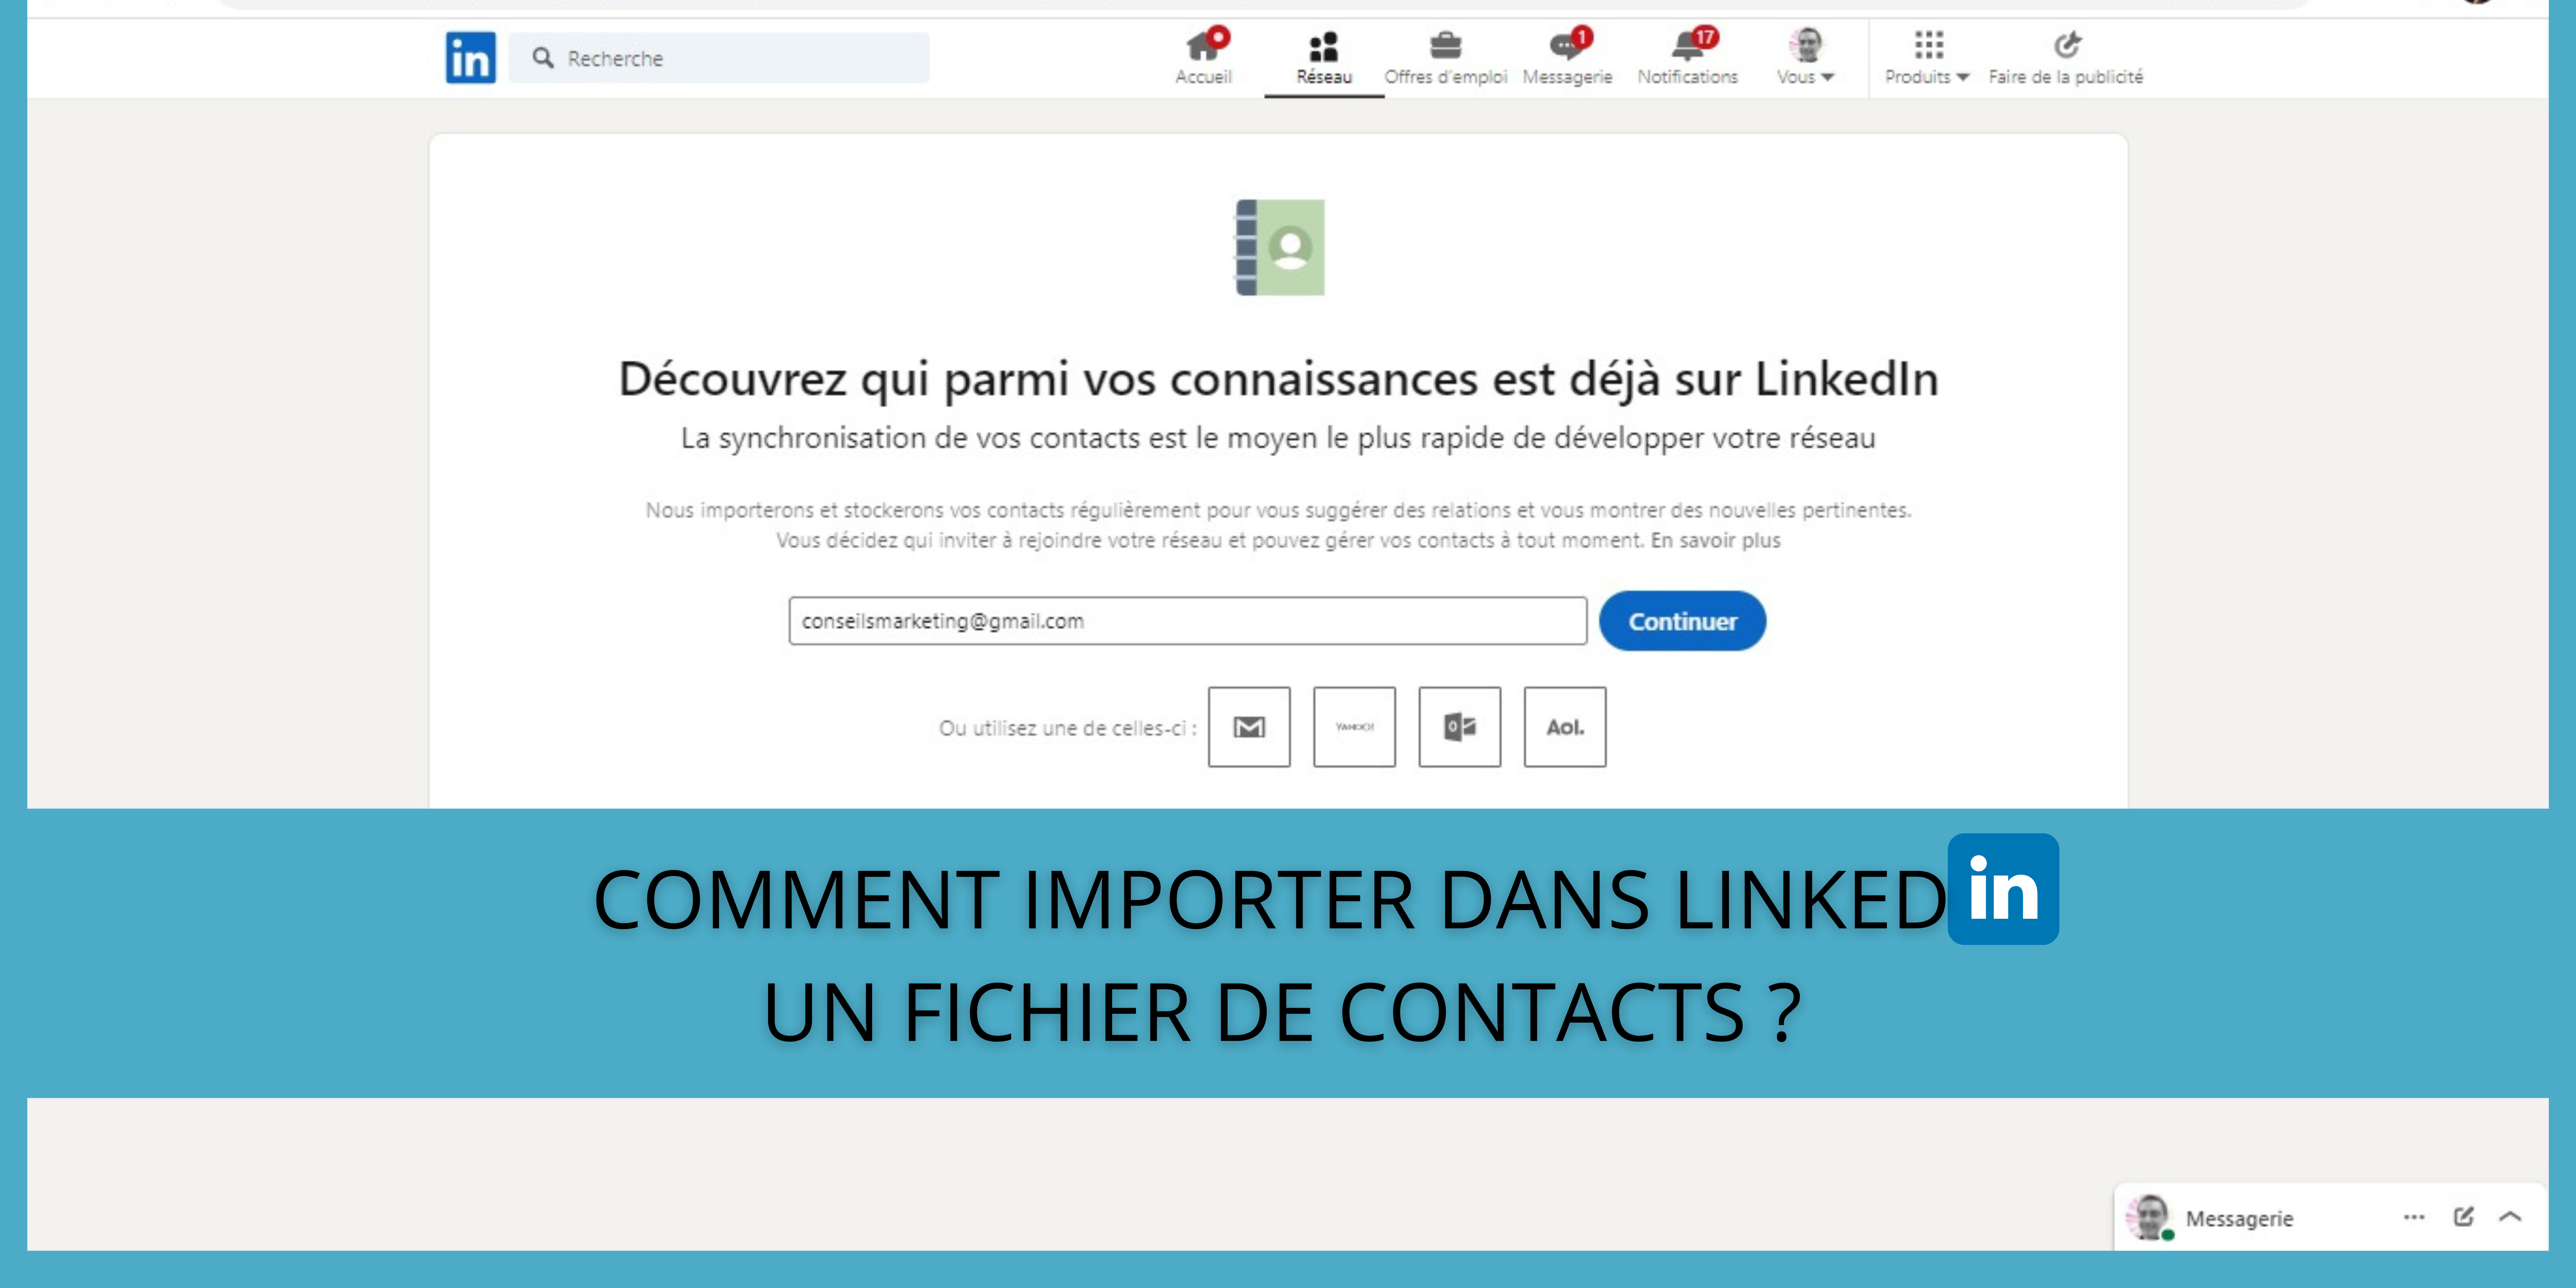 Comment importer dans LinkedIn un fichier de contacts ? 10